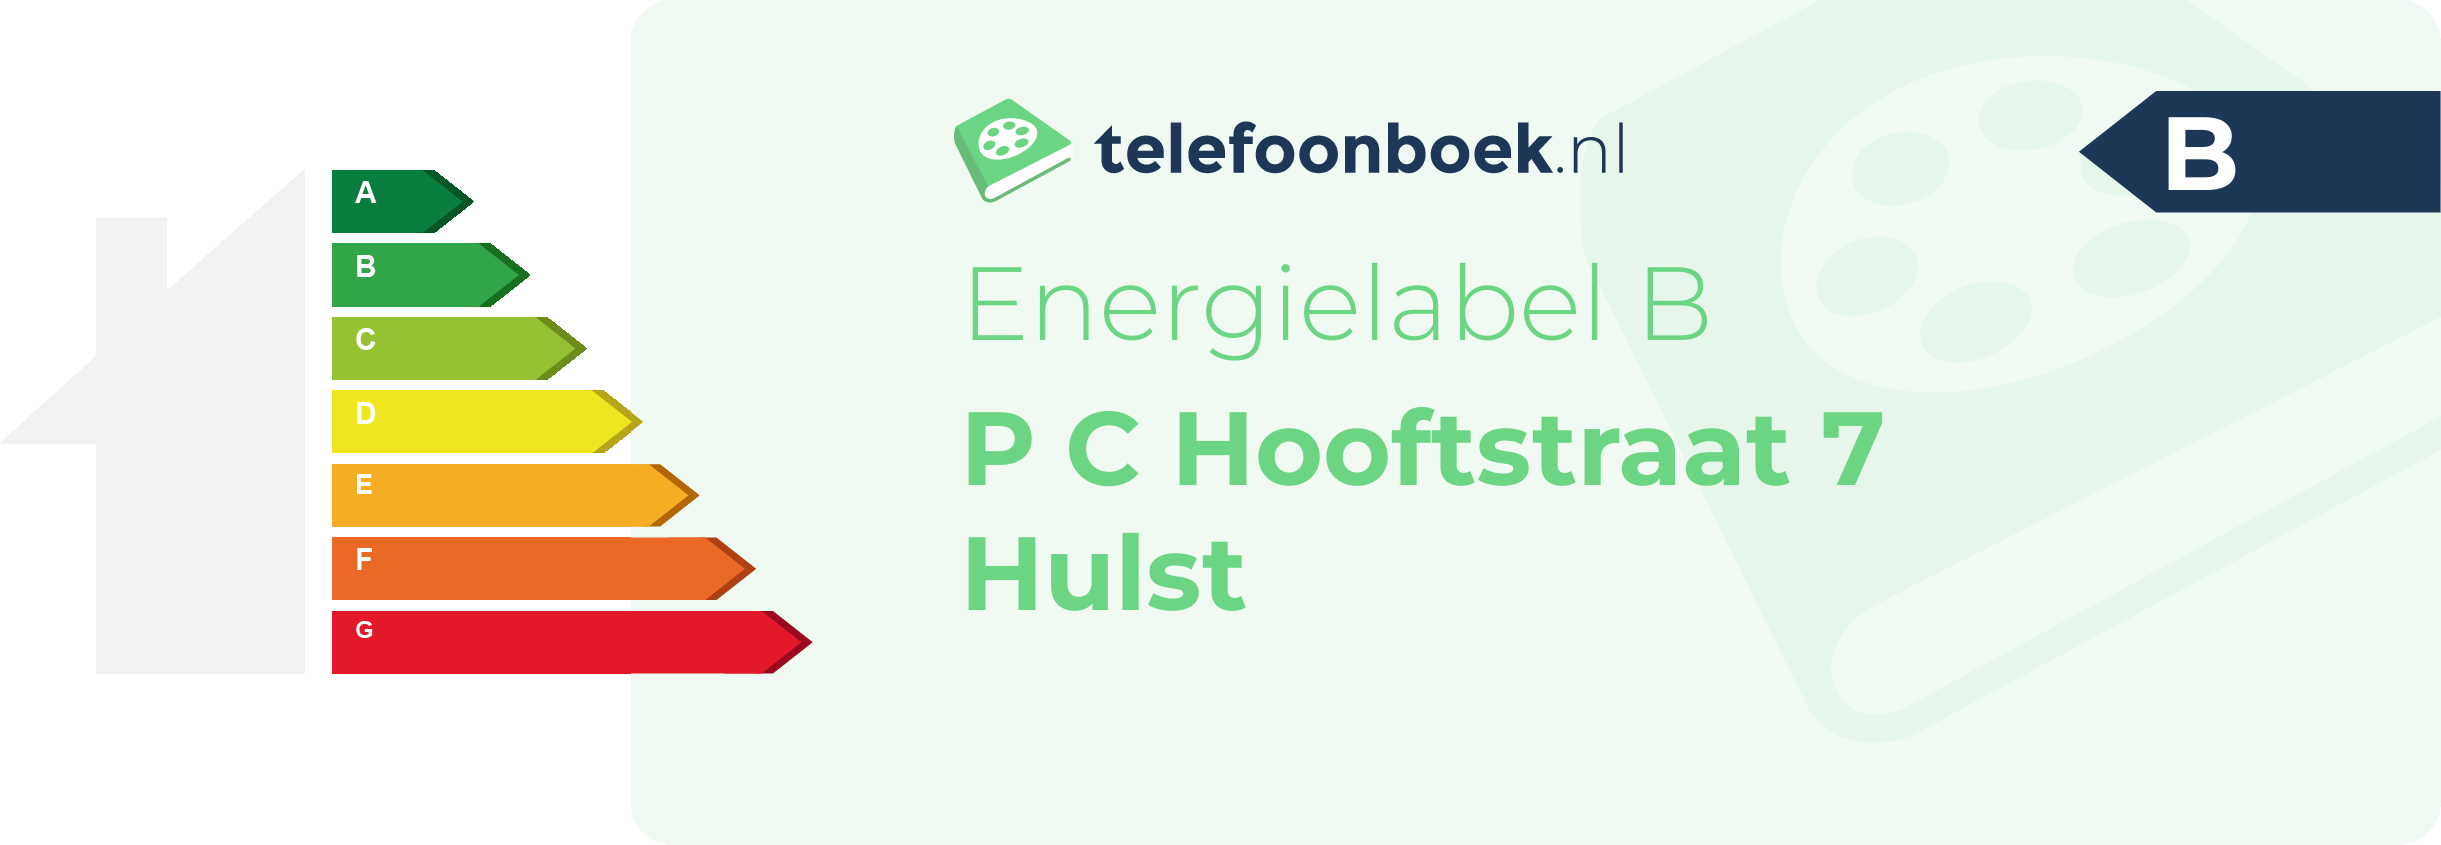 Energielabel P C Hooftstraat 7 Hulst